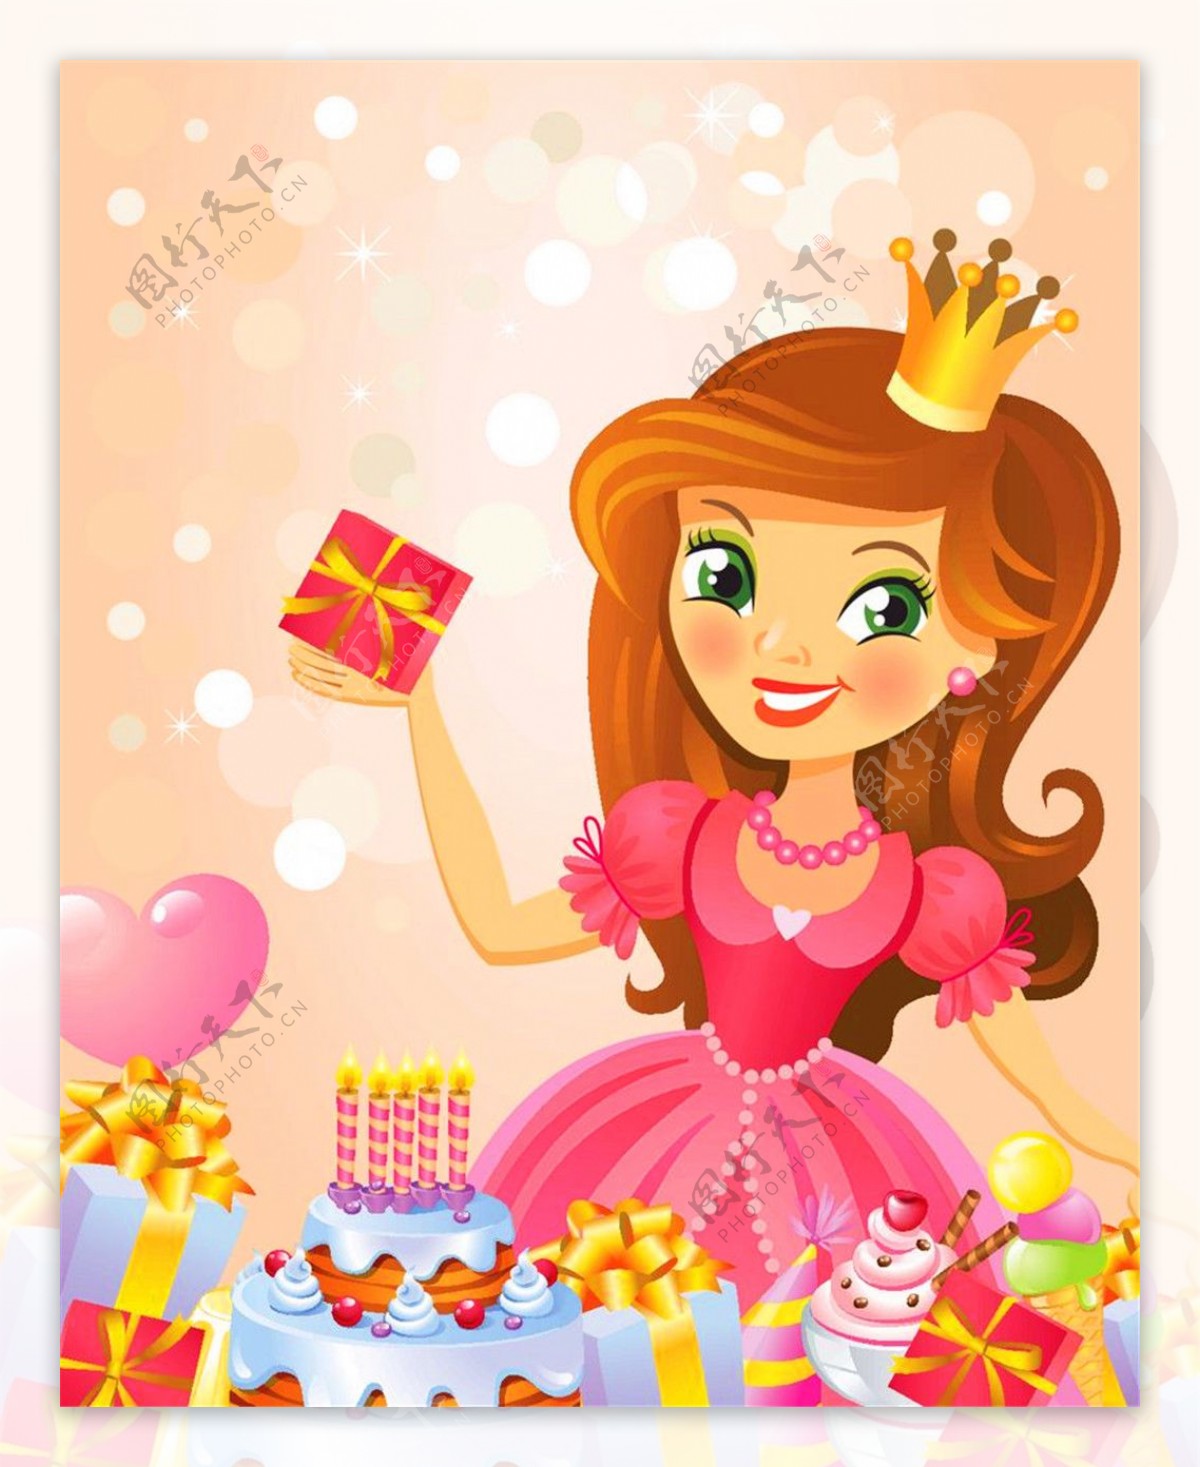 彩色气球礼物生日公主图片